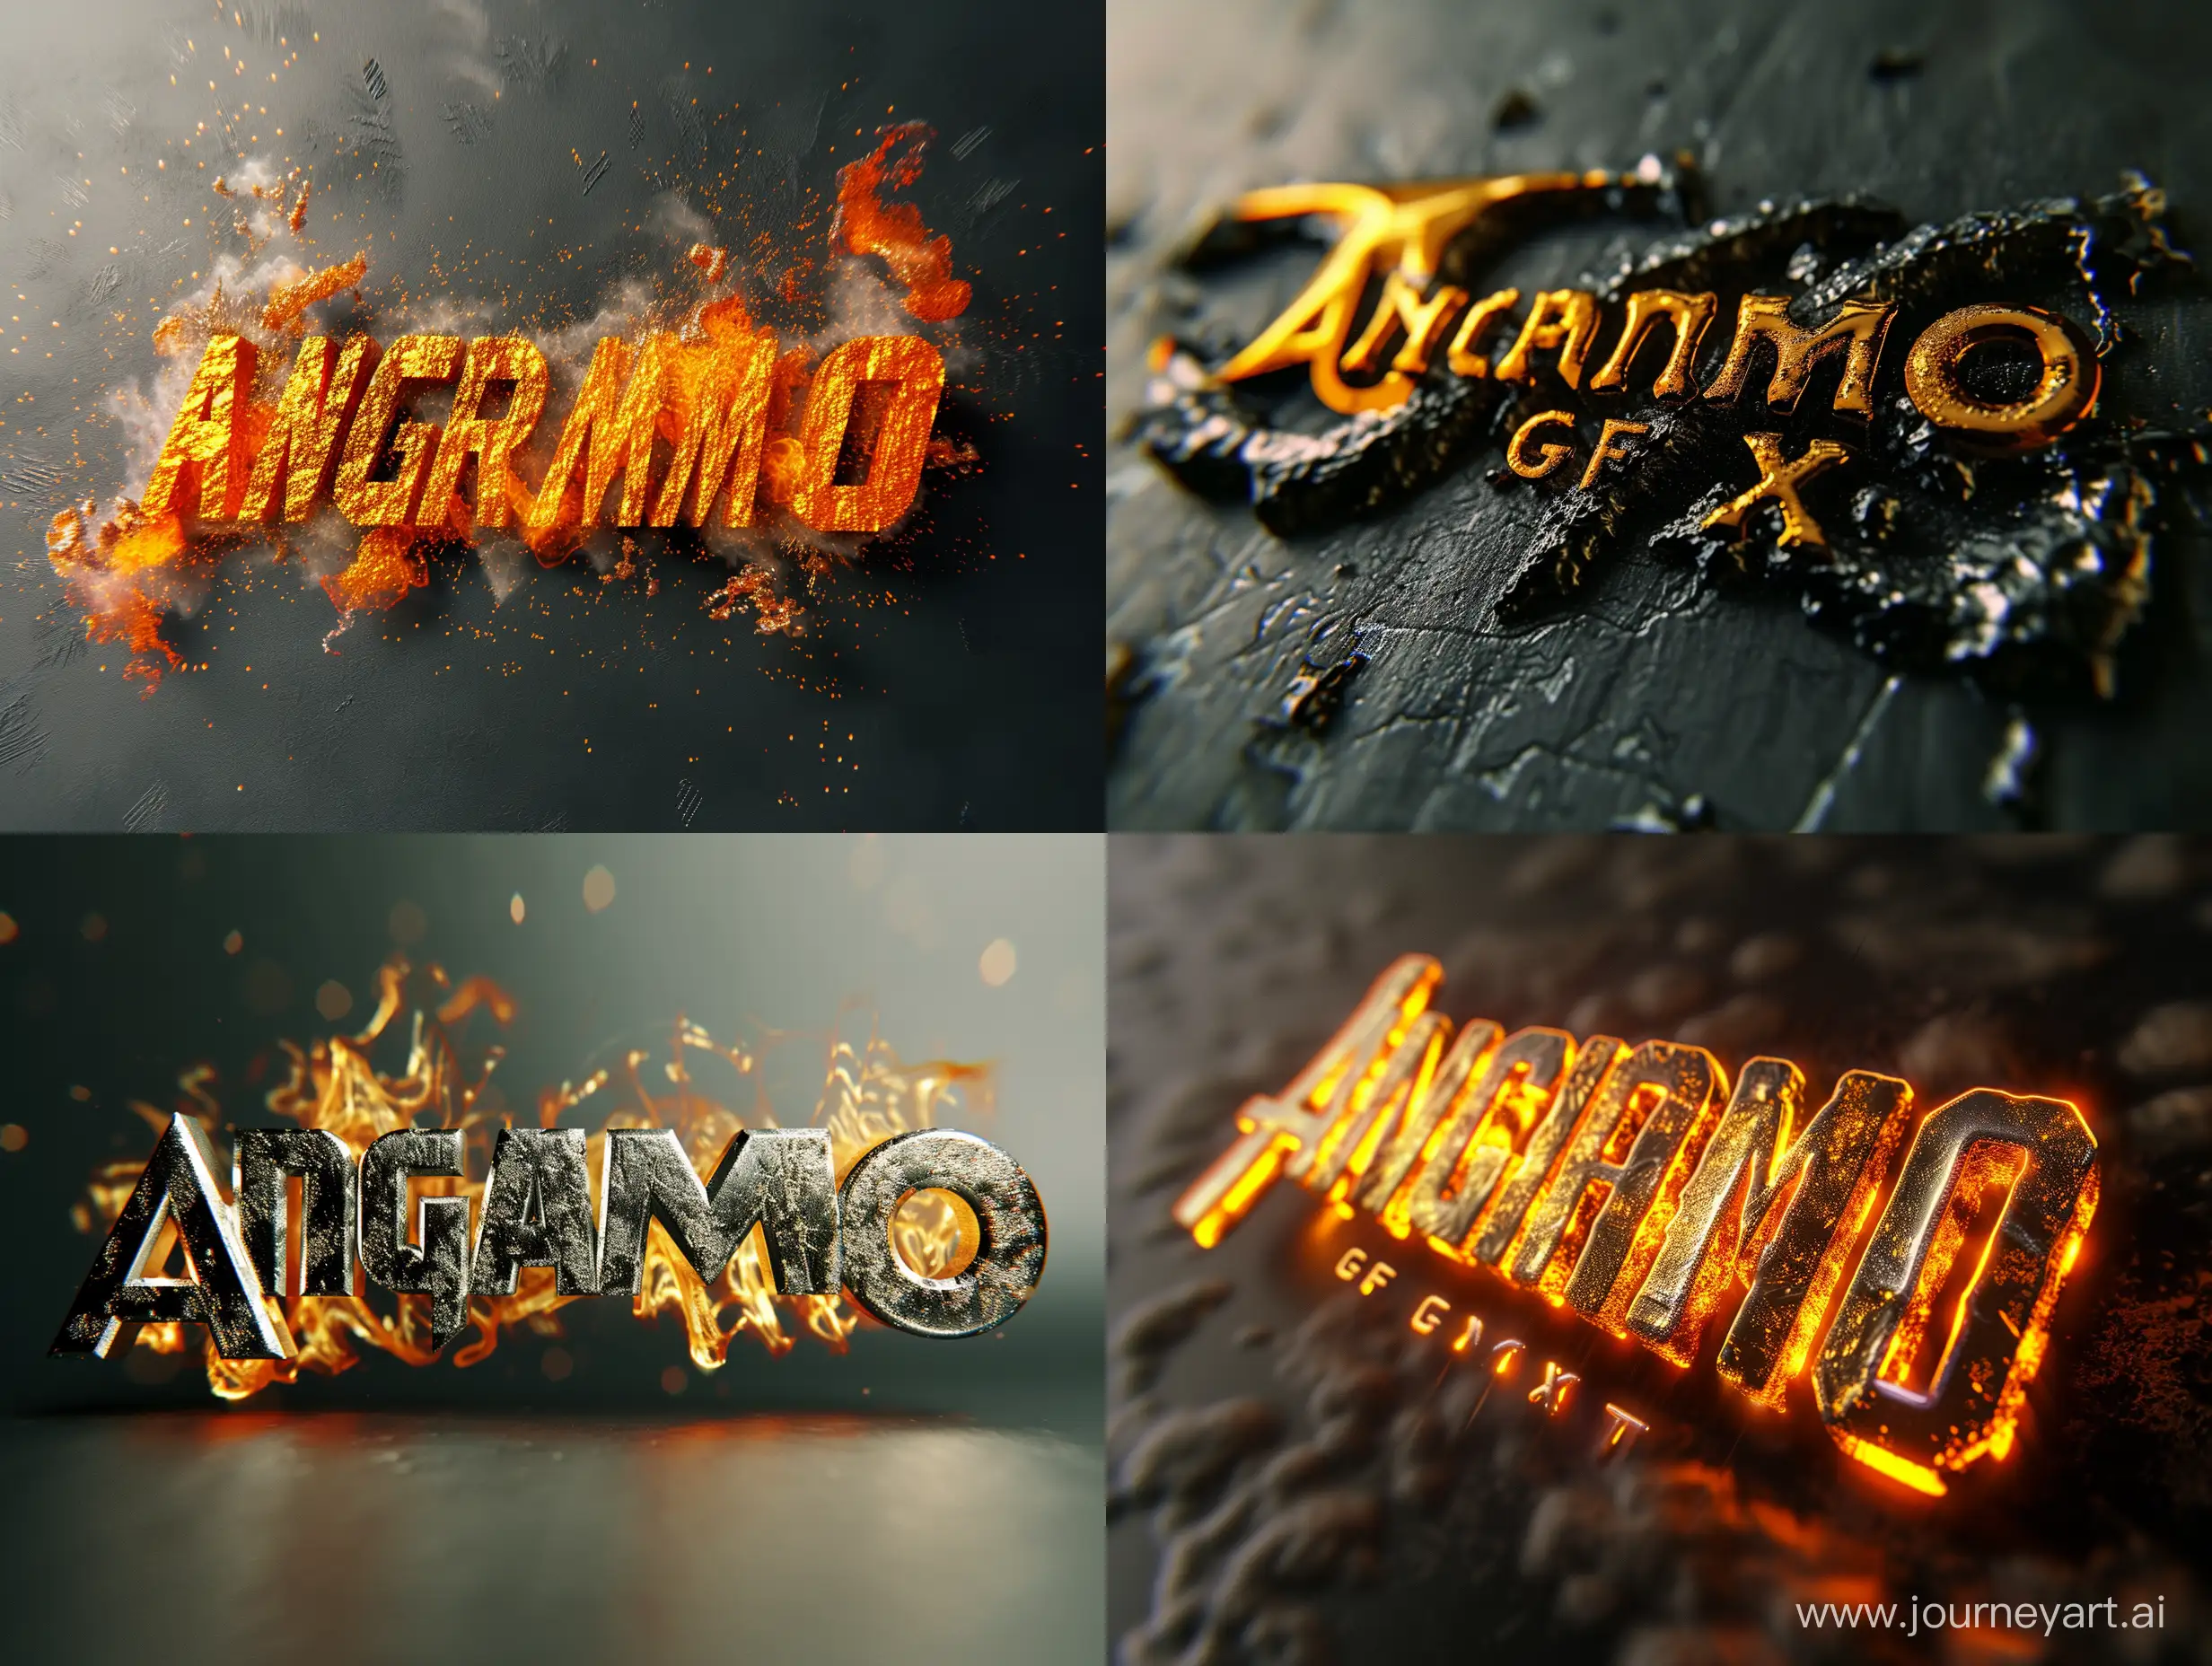 Dynamic-3D-Metallic-Text-Angramo-GFX-with-Molten-Visuals